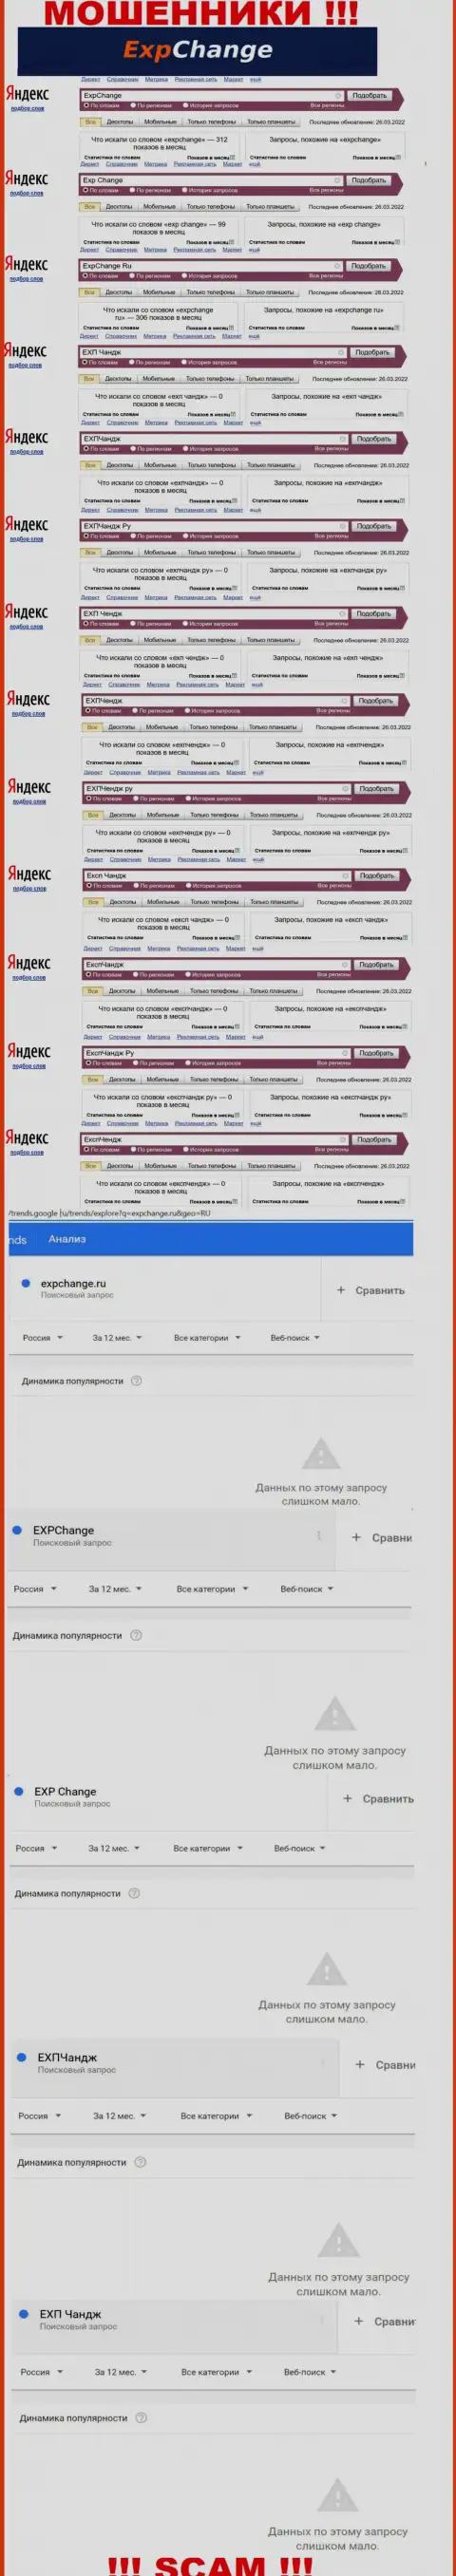 Количество поисковых запросов пользователями инета материала о мошенниках ExpChange Ru